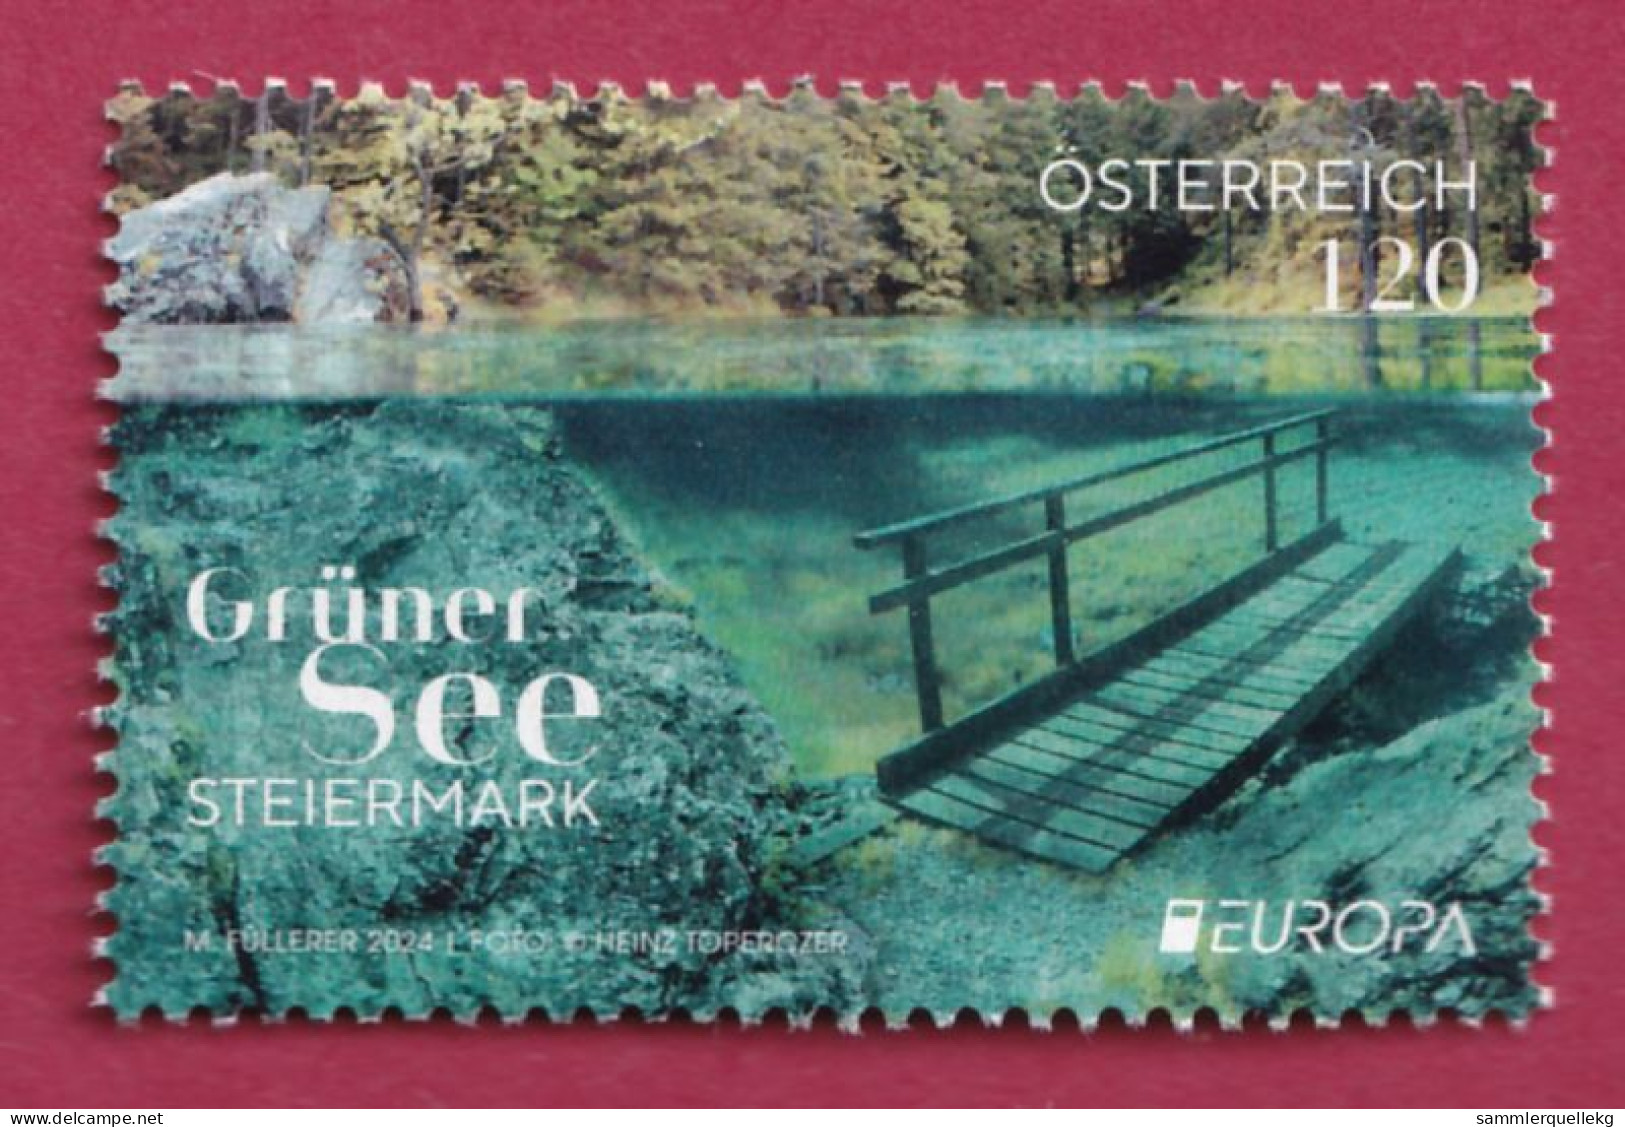 Österreich Europa 2024: Grüner See Postfrisch - Neufs